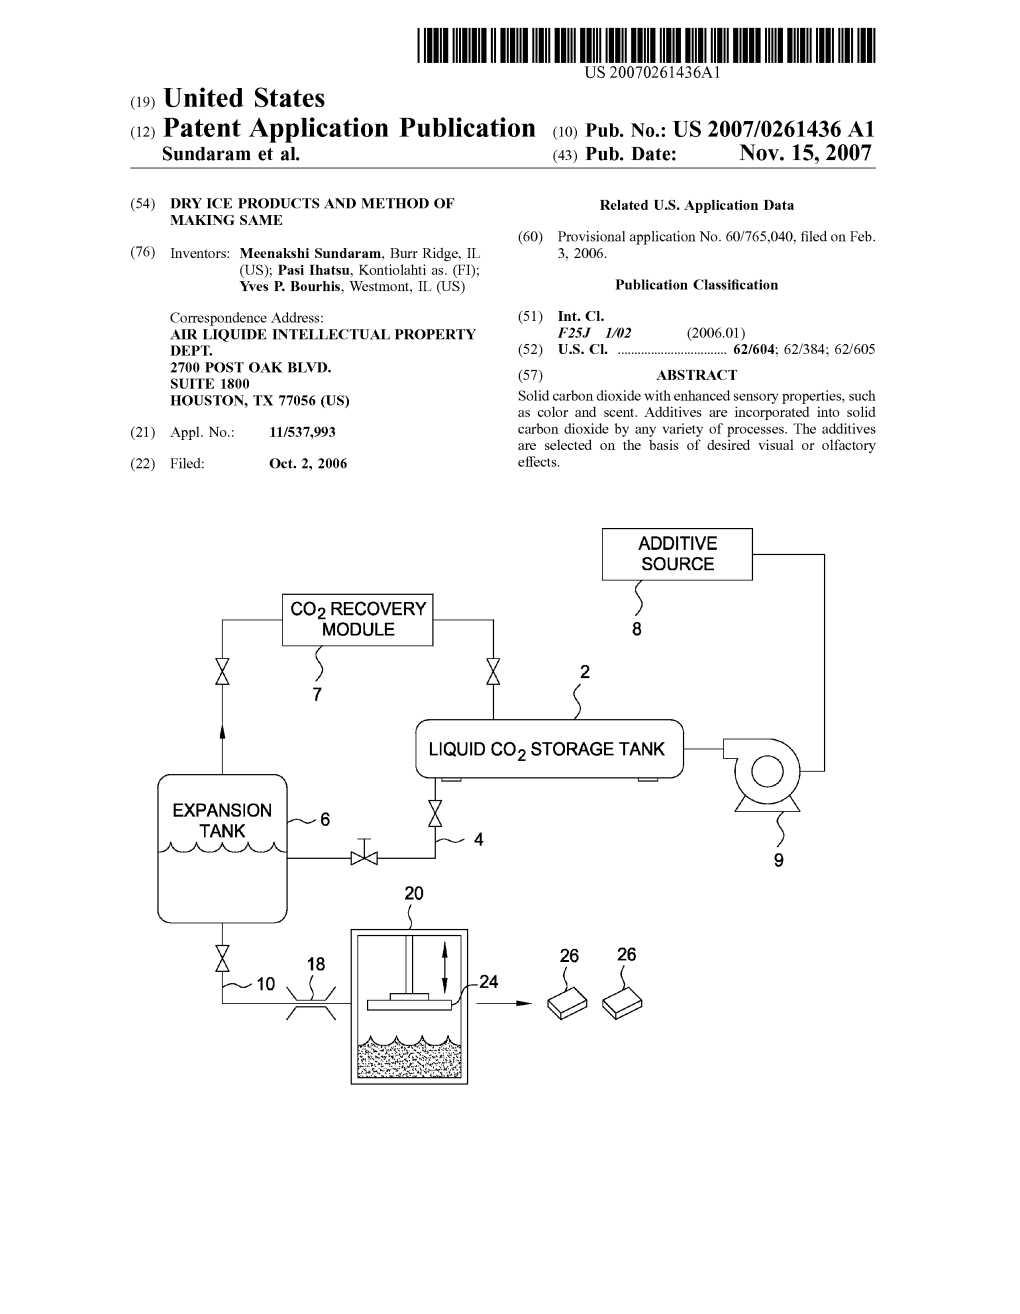 (12) Patent Application Publication (10) Pub. No.: US 2007/0261436A1 Sundaram Et Al